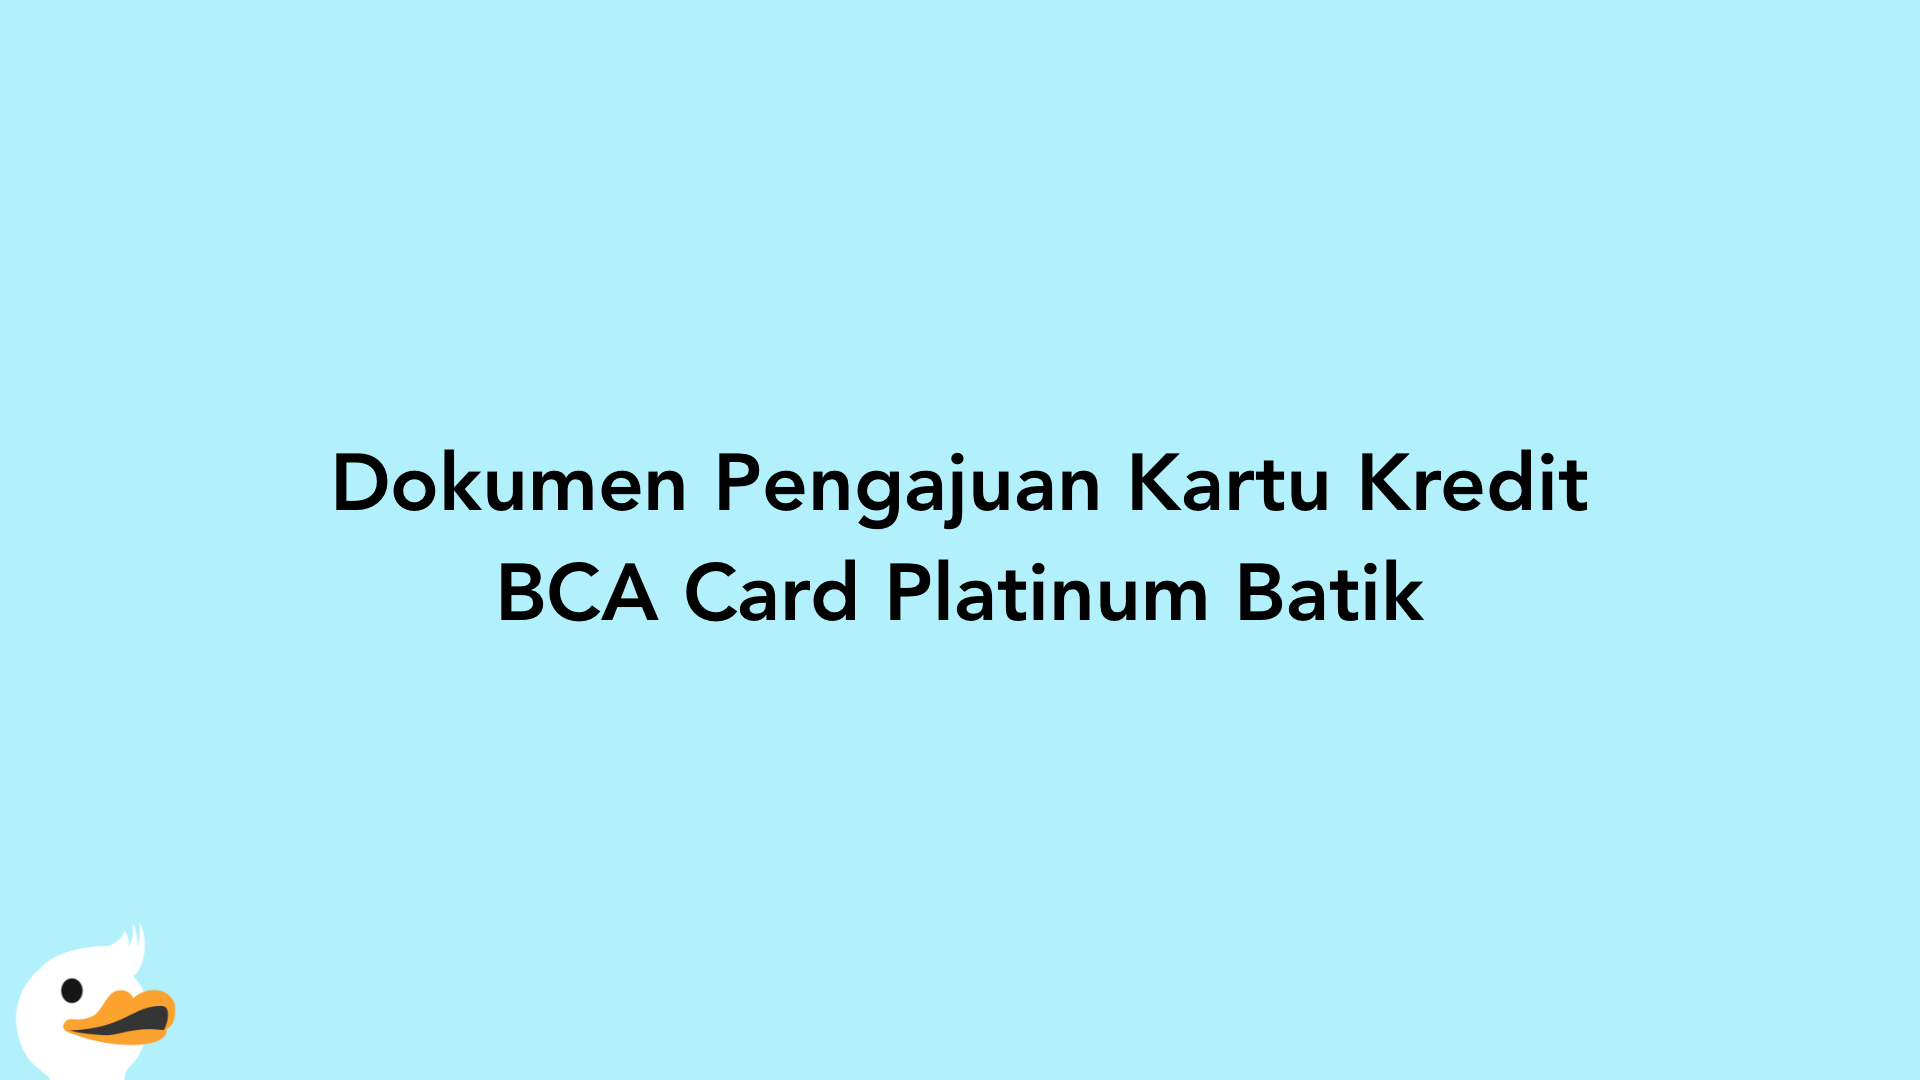 Dokumen Pengajuan Kartu Kredit BCA Card Platinum Batik